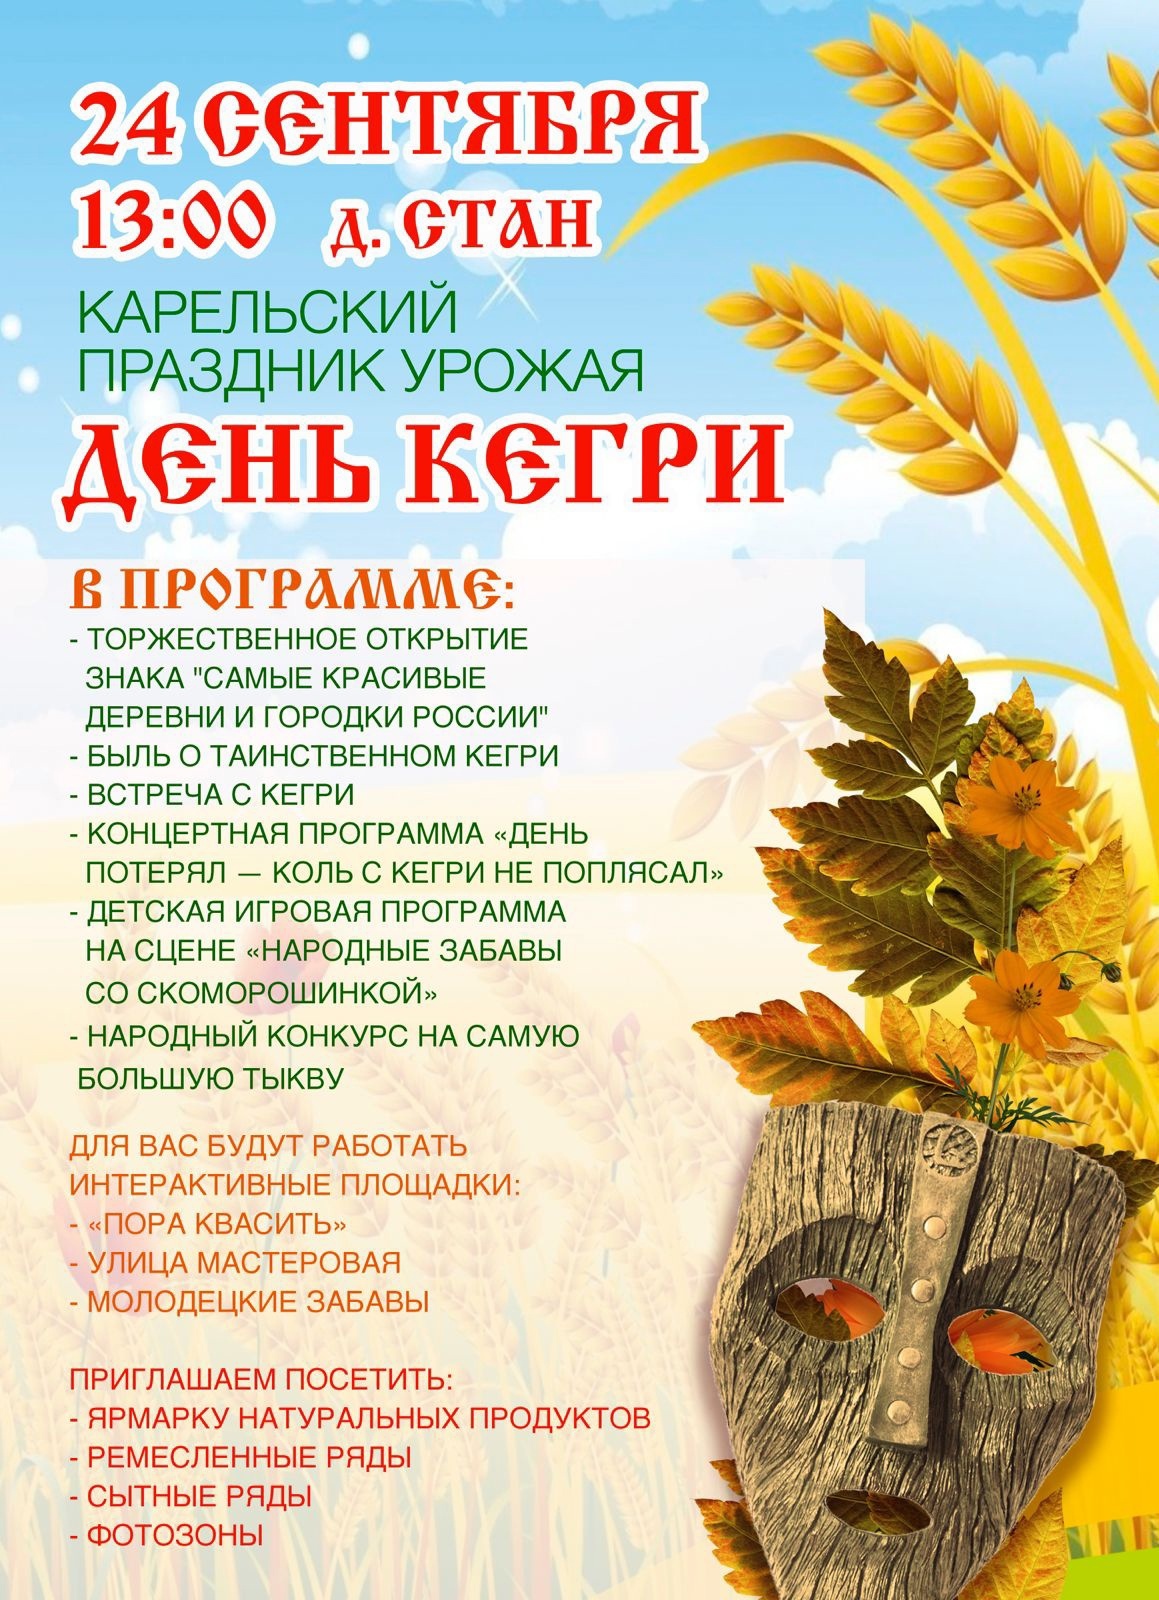 Жителей Твери и области приглашают на карельский праздник урожая